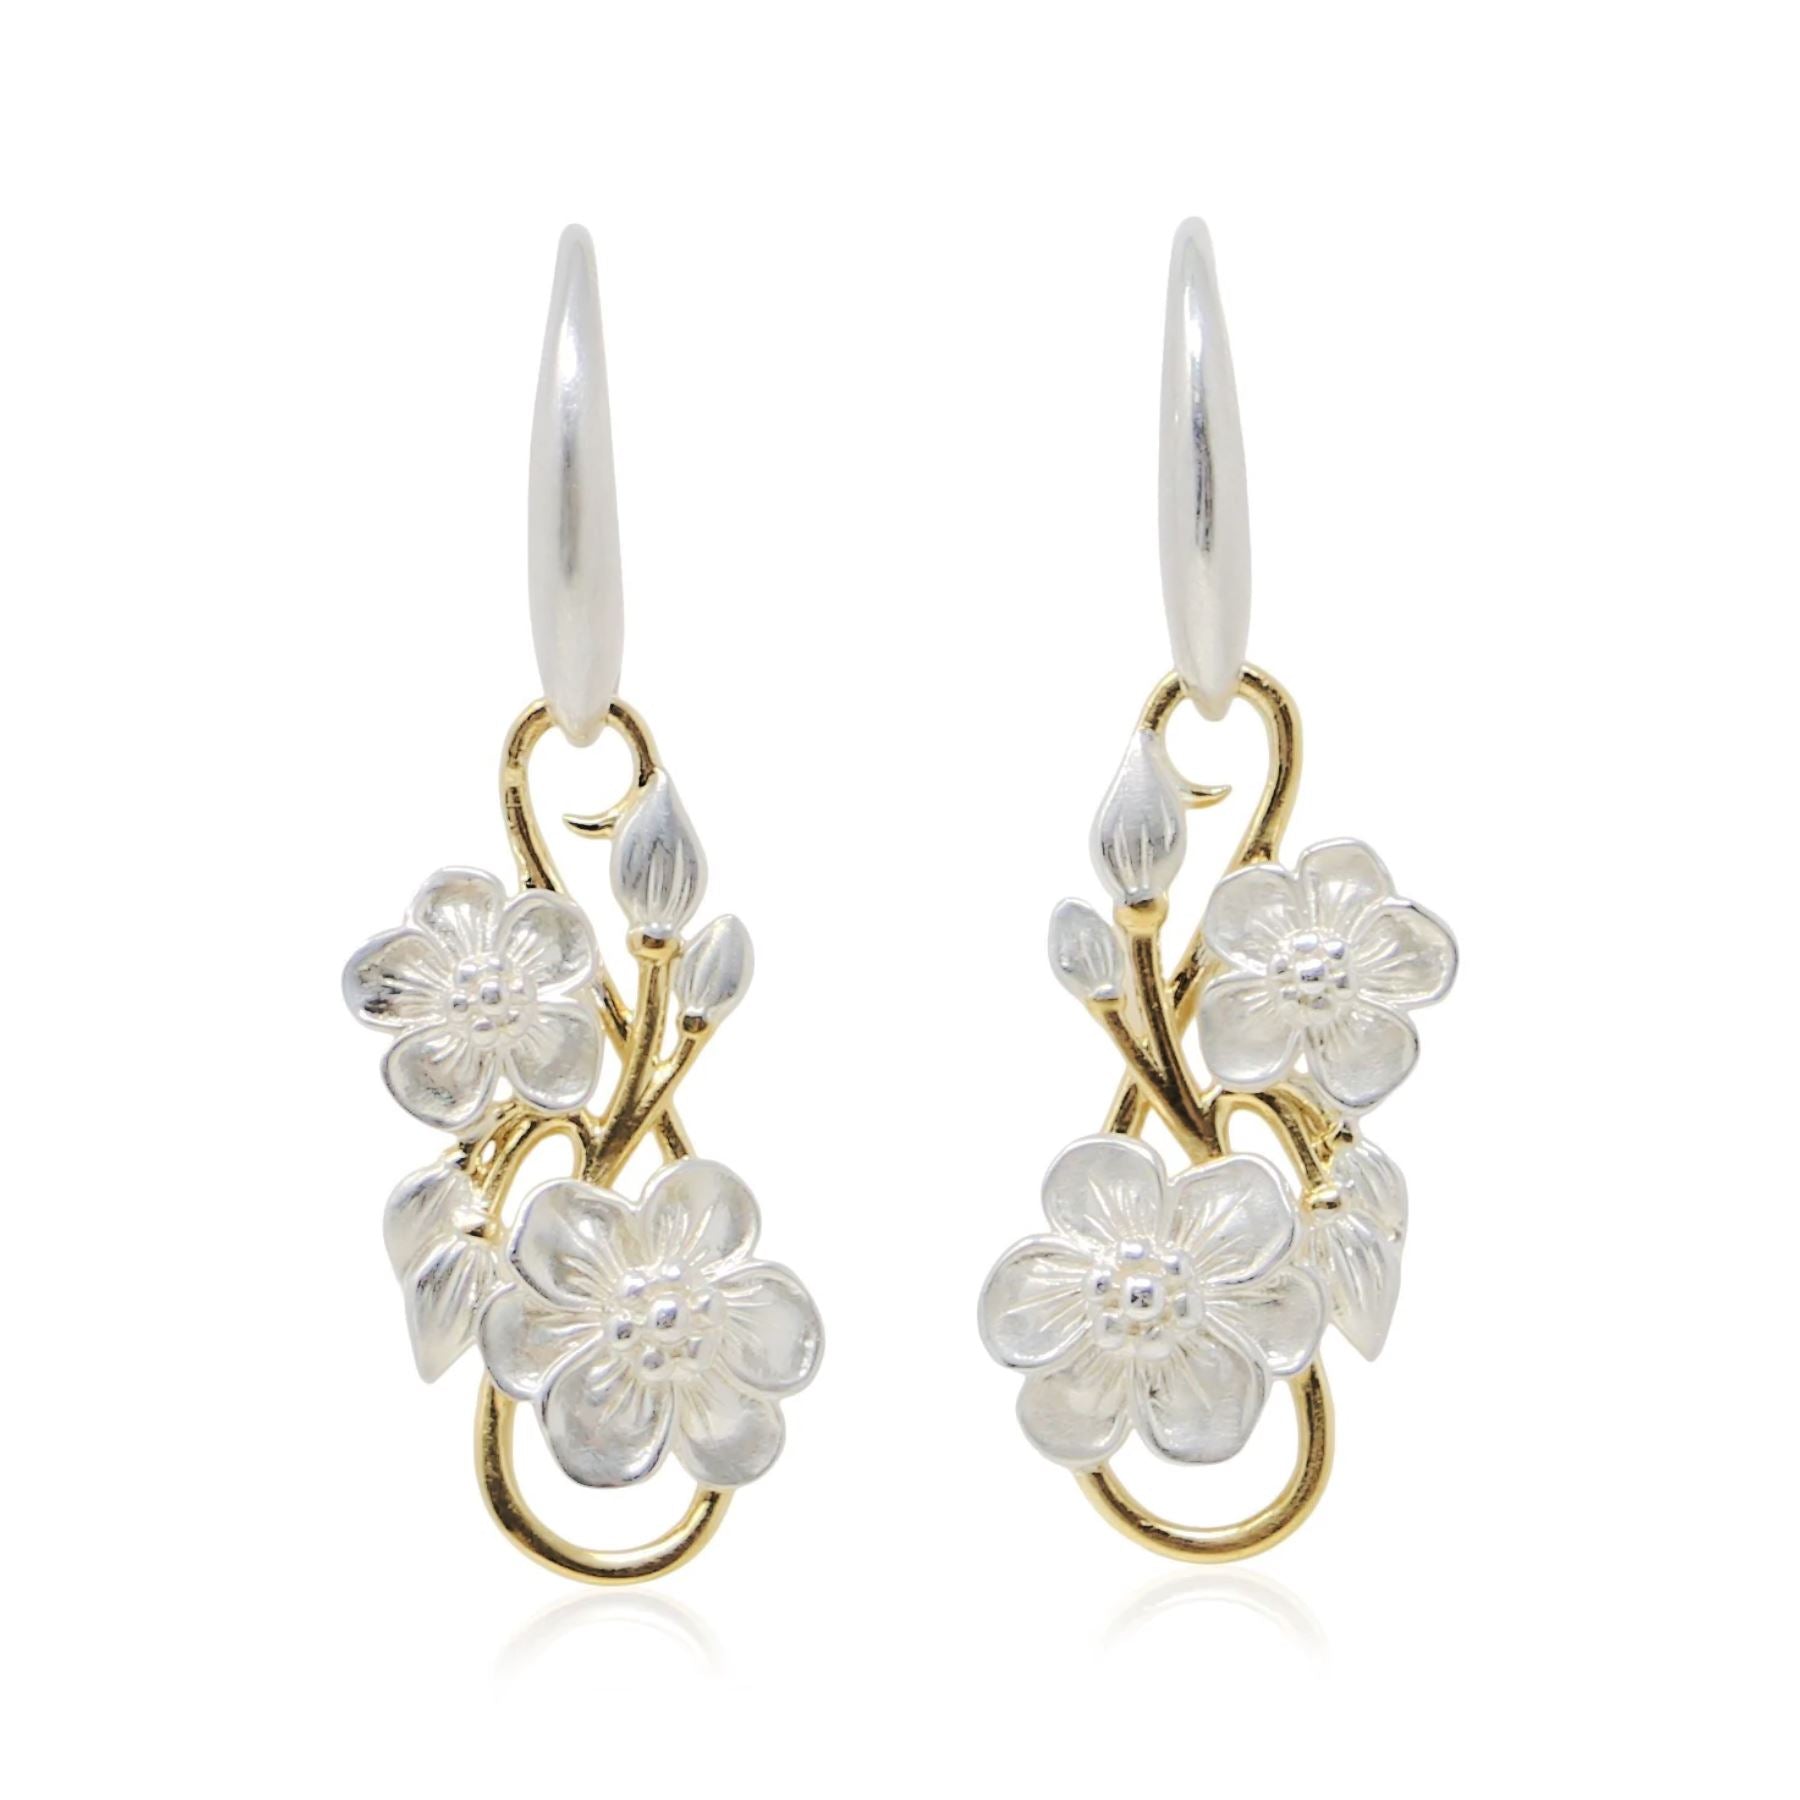 June Birth Flower Stud Earrings | Gold Vermeil | Birth Flower Earrings –  Made By Mary